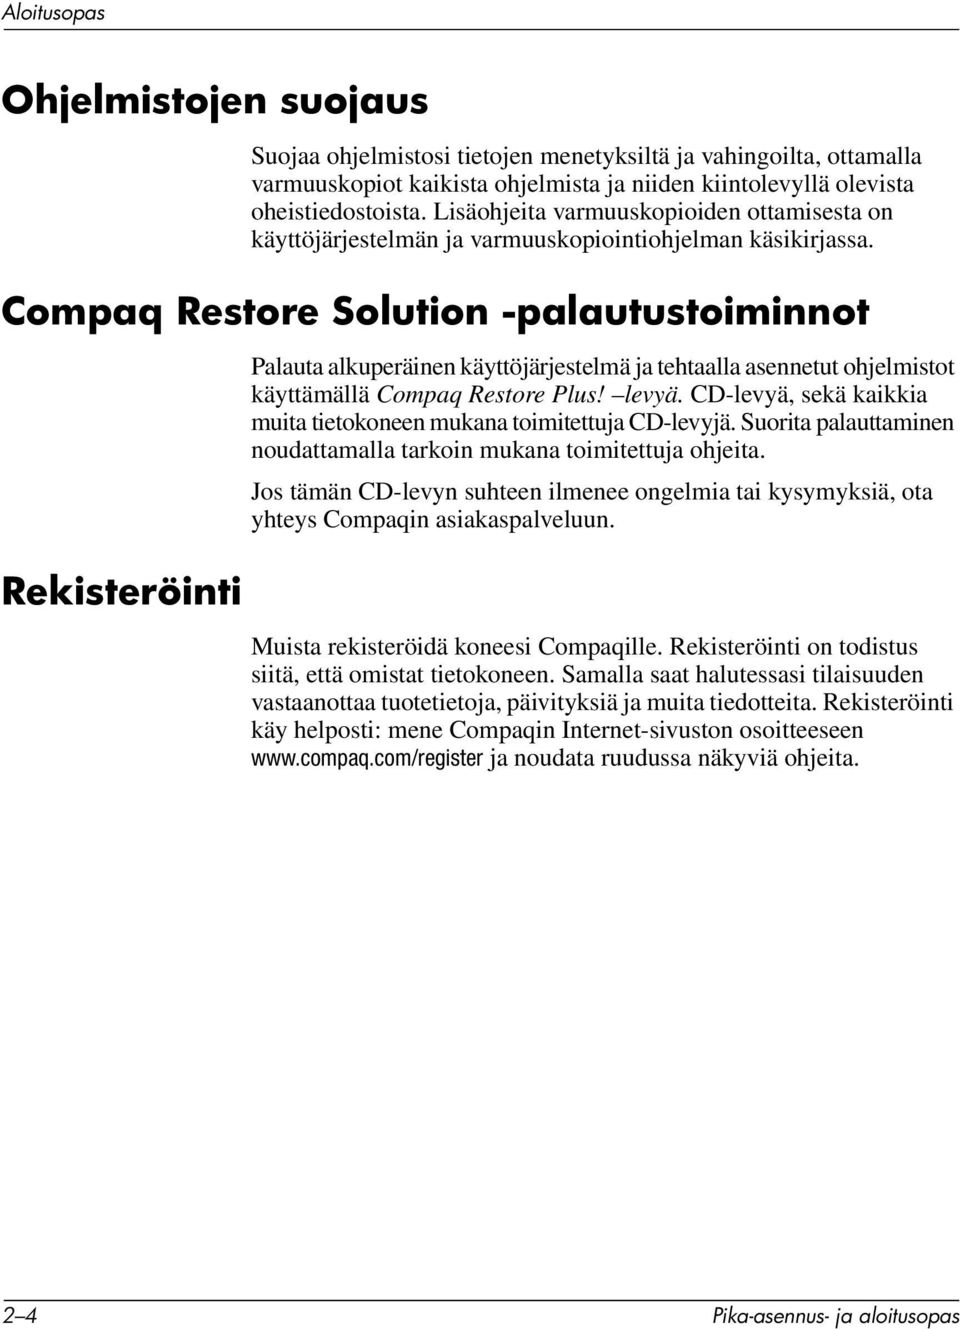 Compaq Restore Solution -palautustoiminnot Rekisteröinti Palauta alkuperäinen käyttöjärjestelmä ja tehtaalla asennetut ohjelmistot käyttämällä Compaq Restore Plus! levyä.